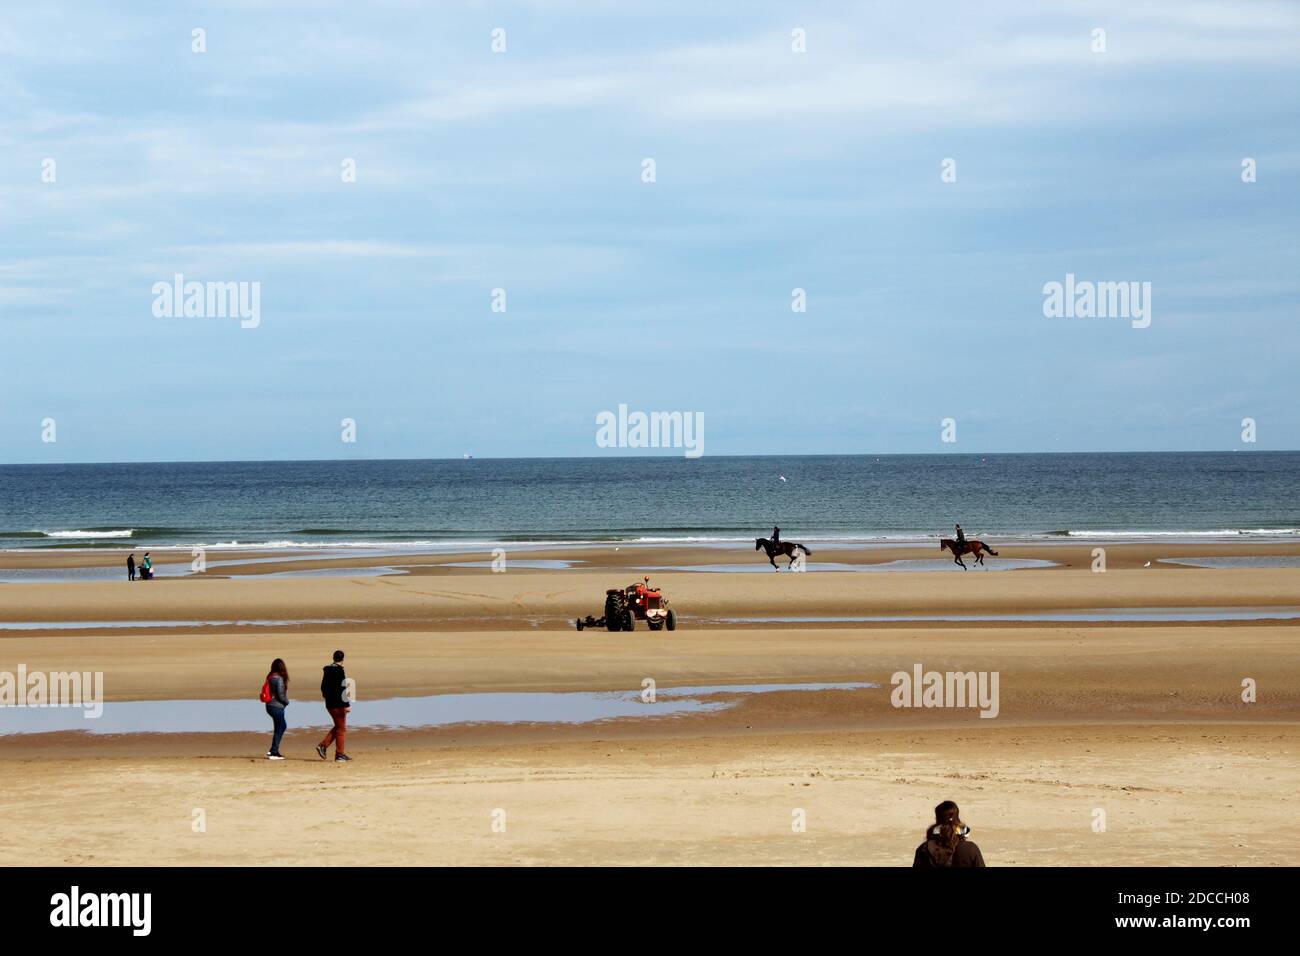 Spaziergänger, Reiter, Pferde am Strand von Omaha Beach, Normandie, Frankreich Stock Photo